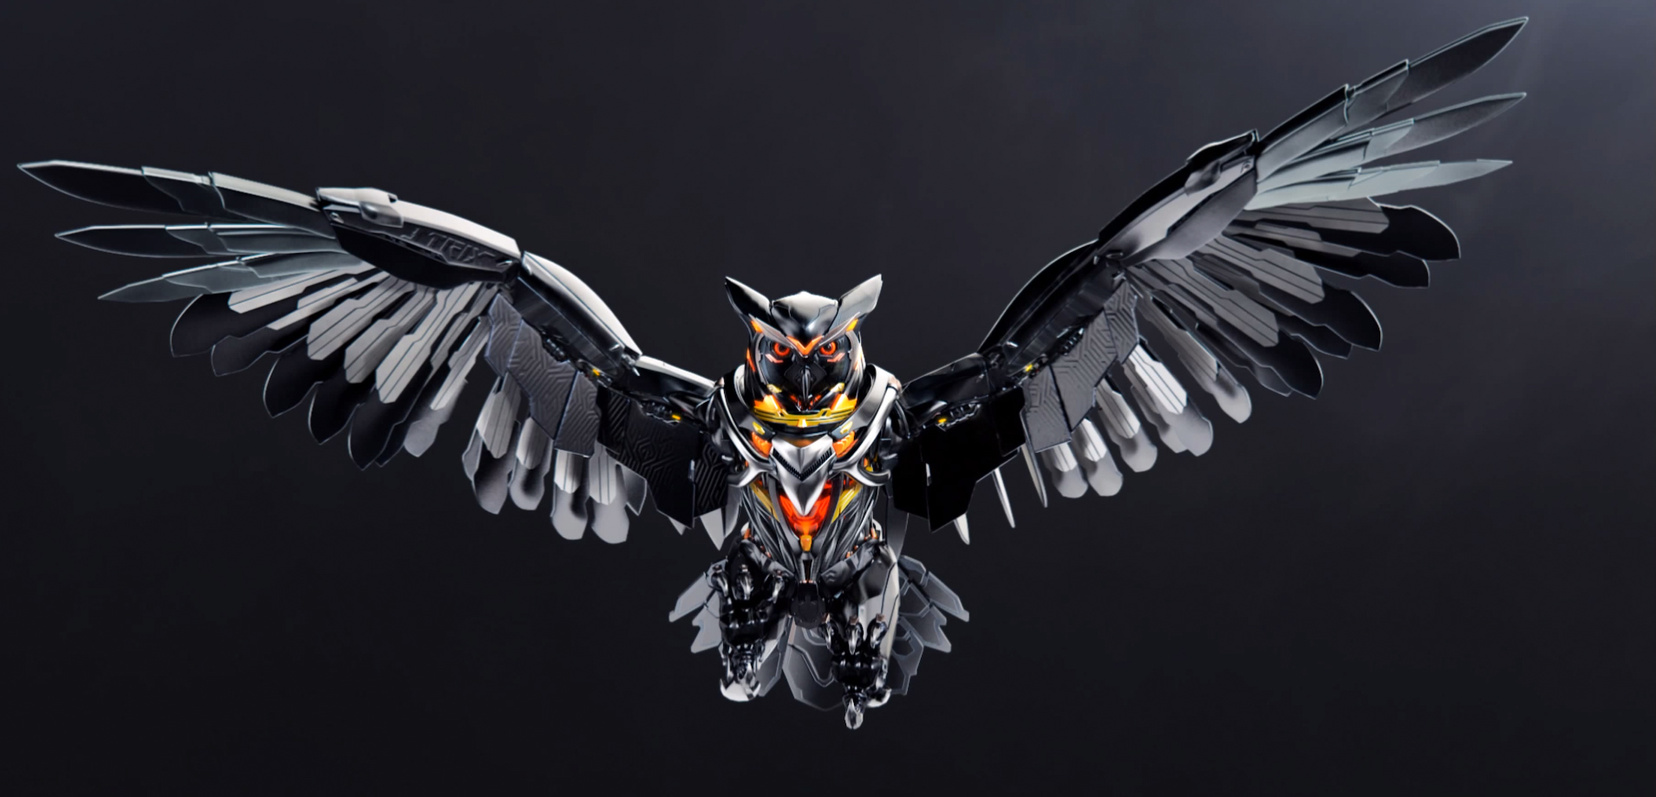 Asus Strix Owl - HD Wallpaper 